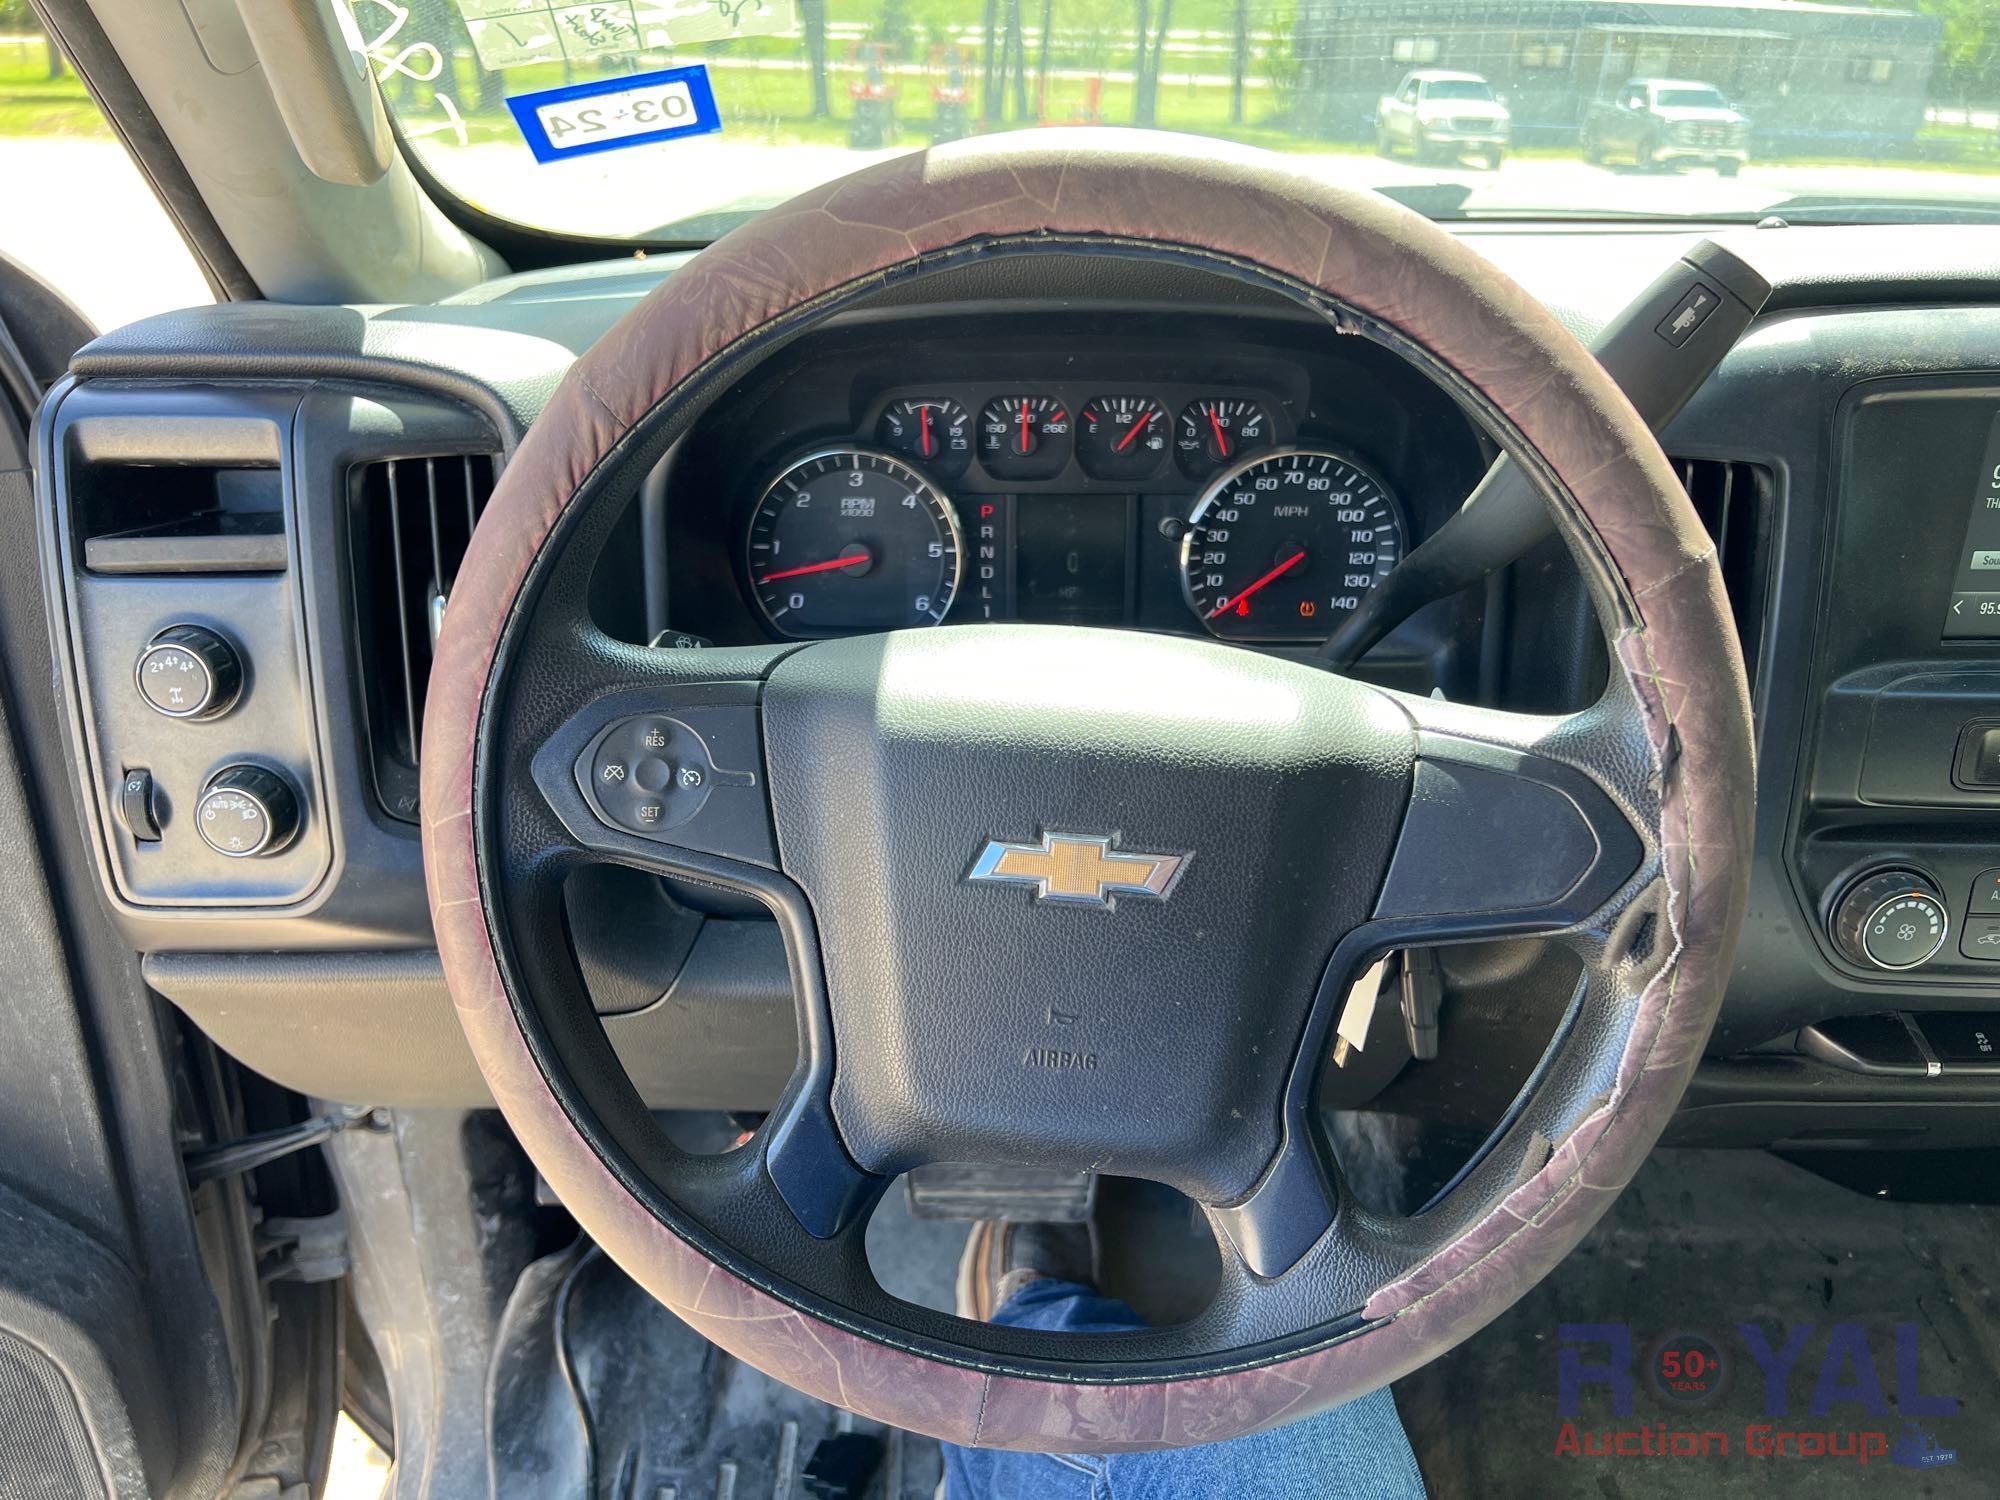 2017 Chevrolet Silverado 2500HD 4x4 Double Cab Pickup Truck